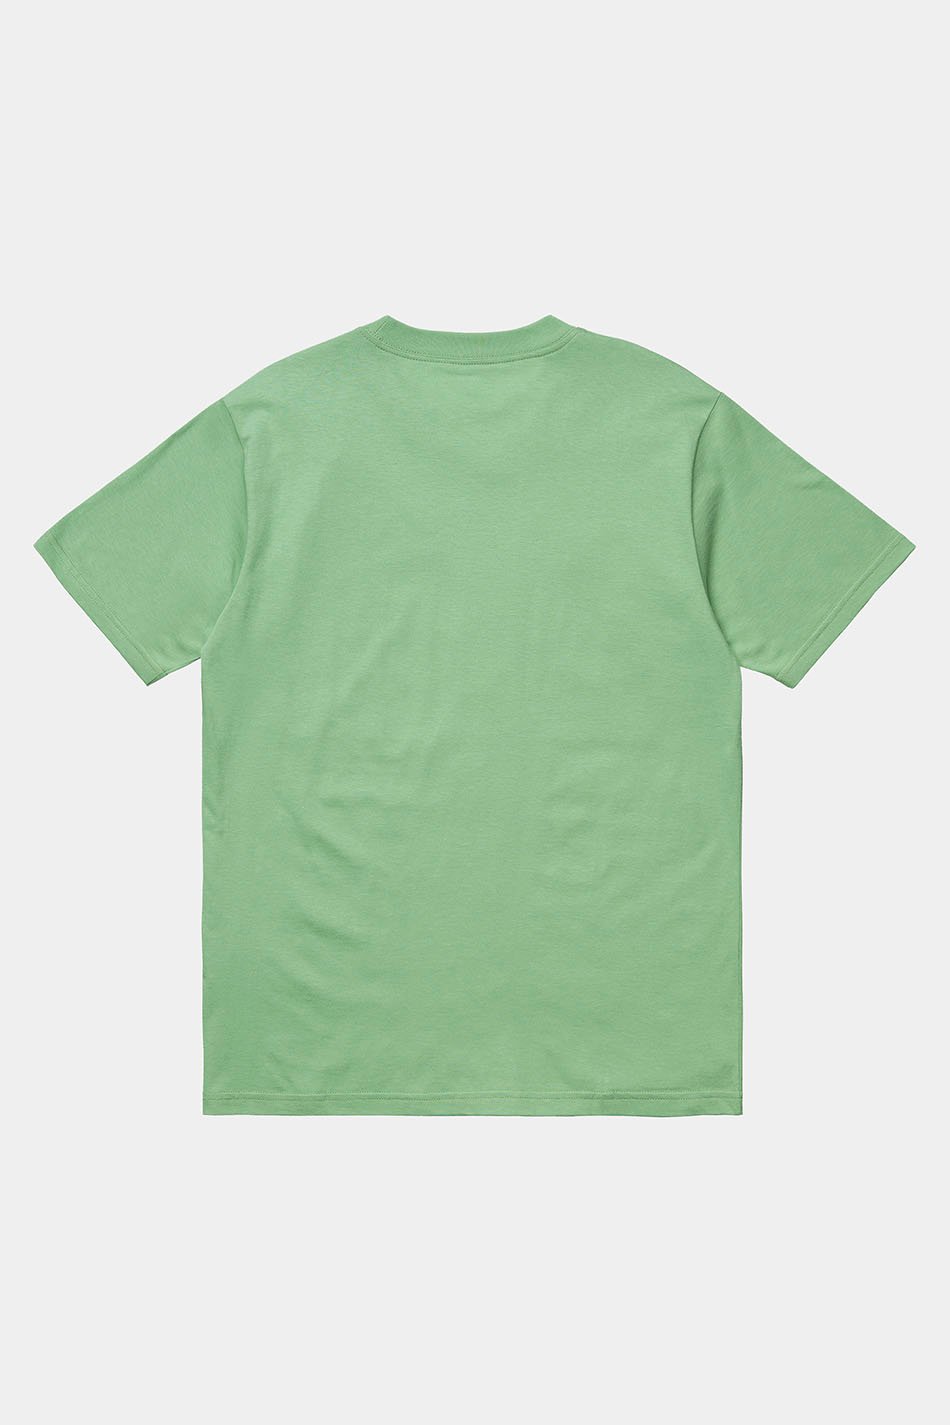 Carhartt WIP World green t-shirt